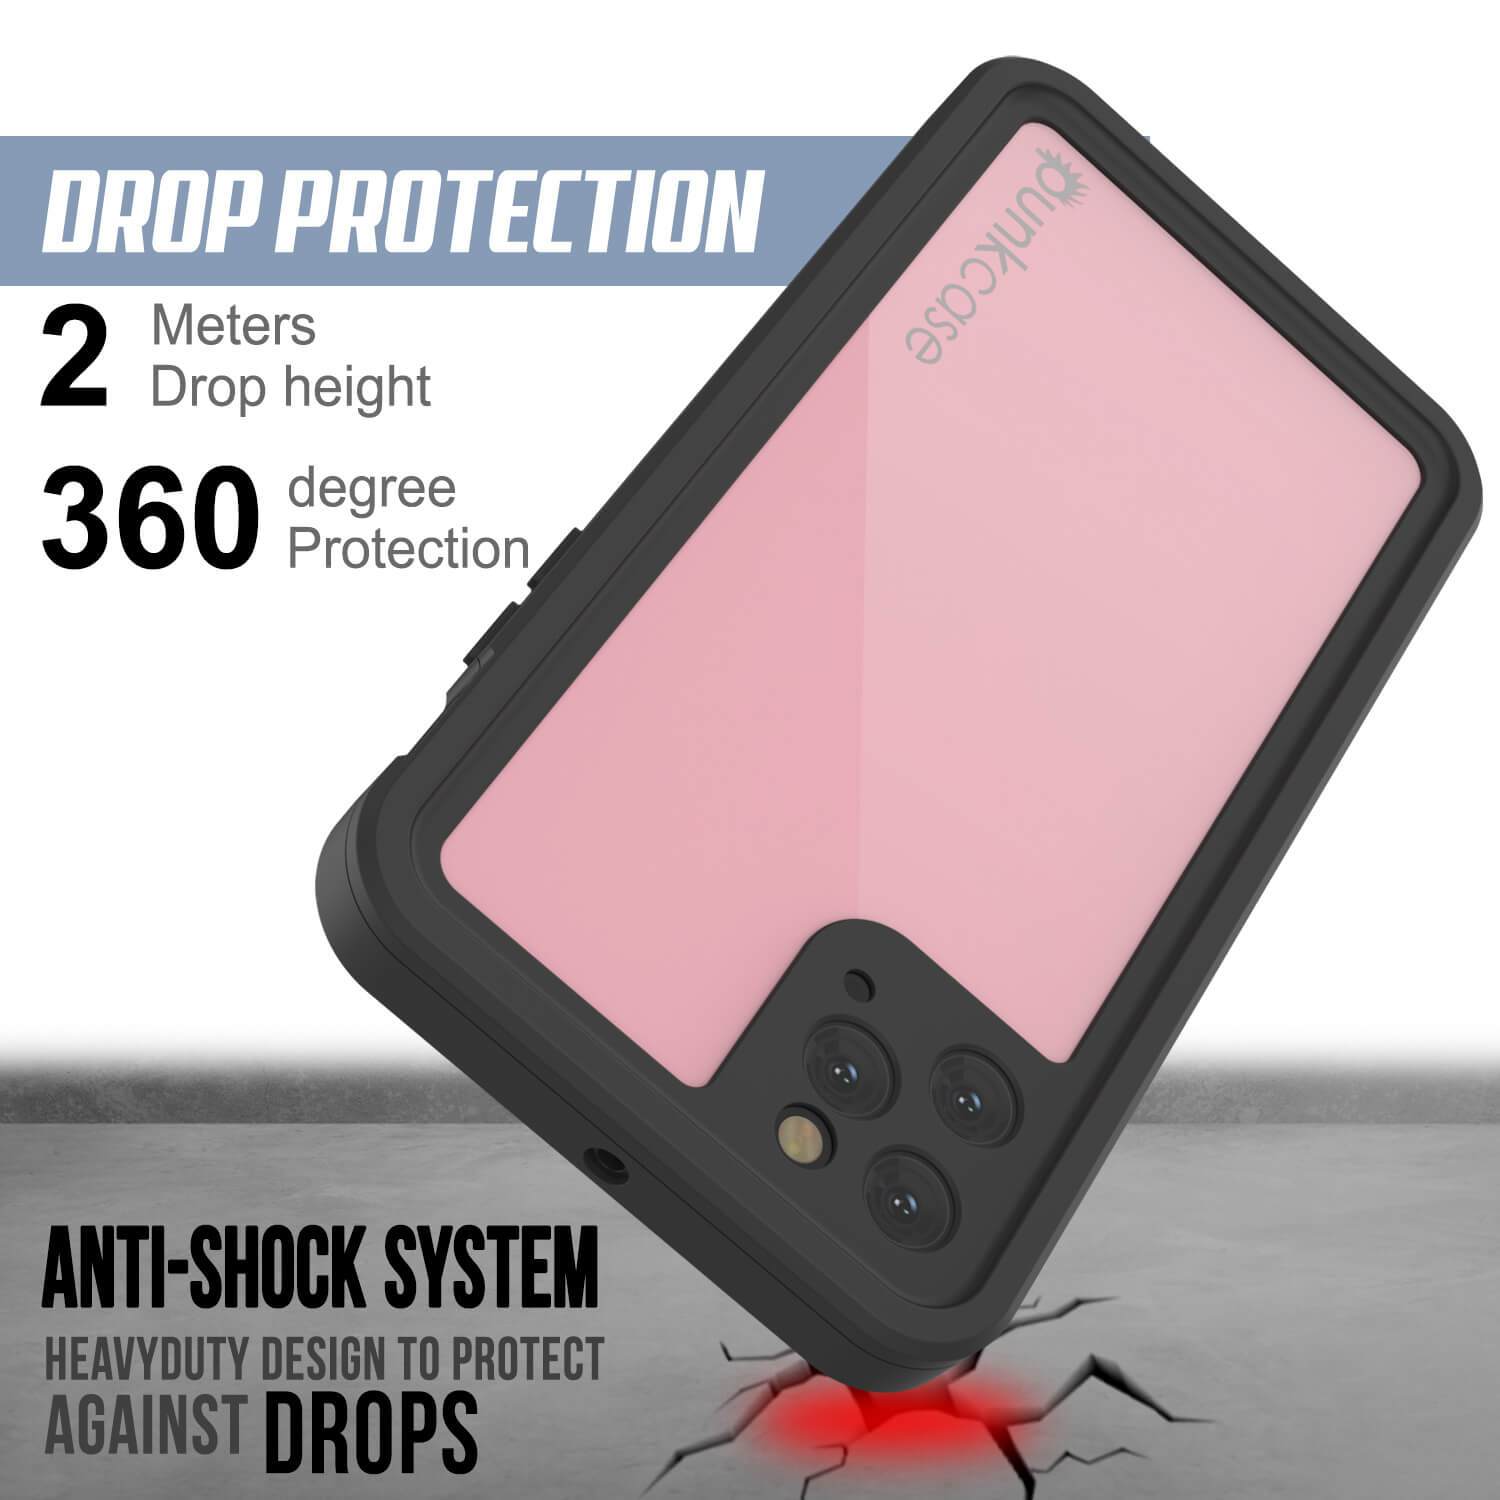 iPhone 11 Pro Waterproof IP68 Case, Punkcase [Pink] [StudStar Series] [Slim Fit] [Dirtproof]